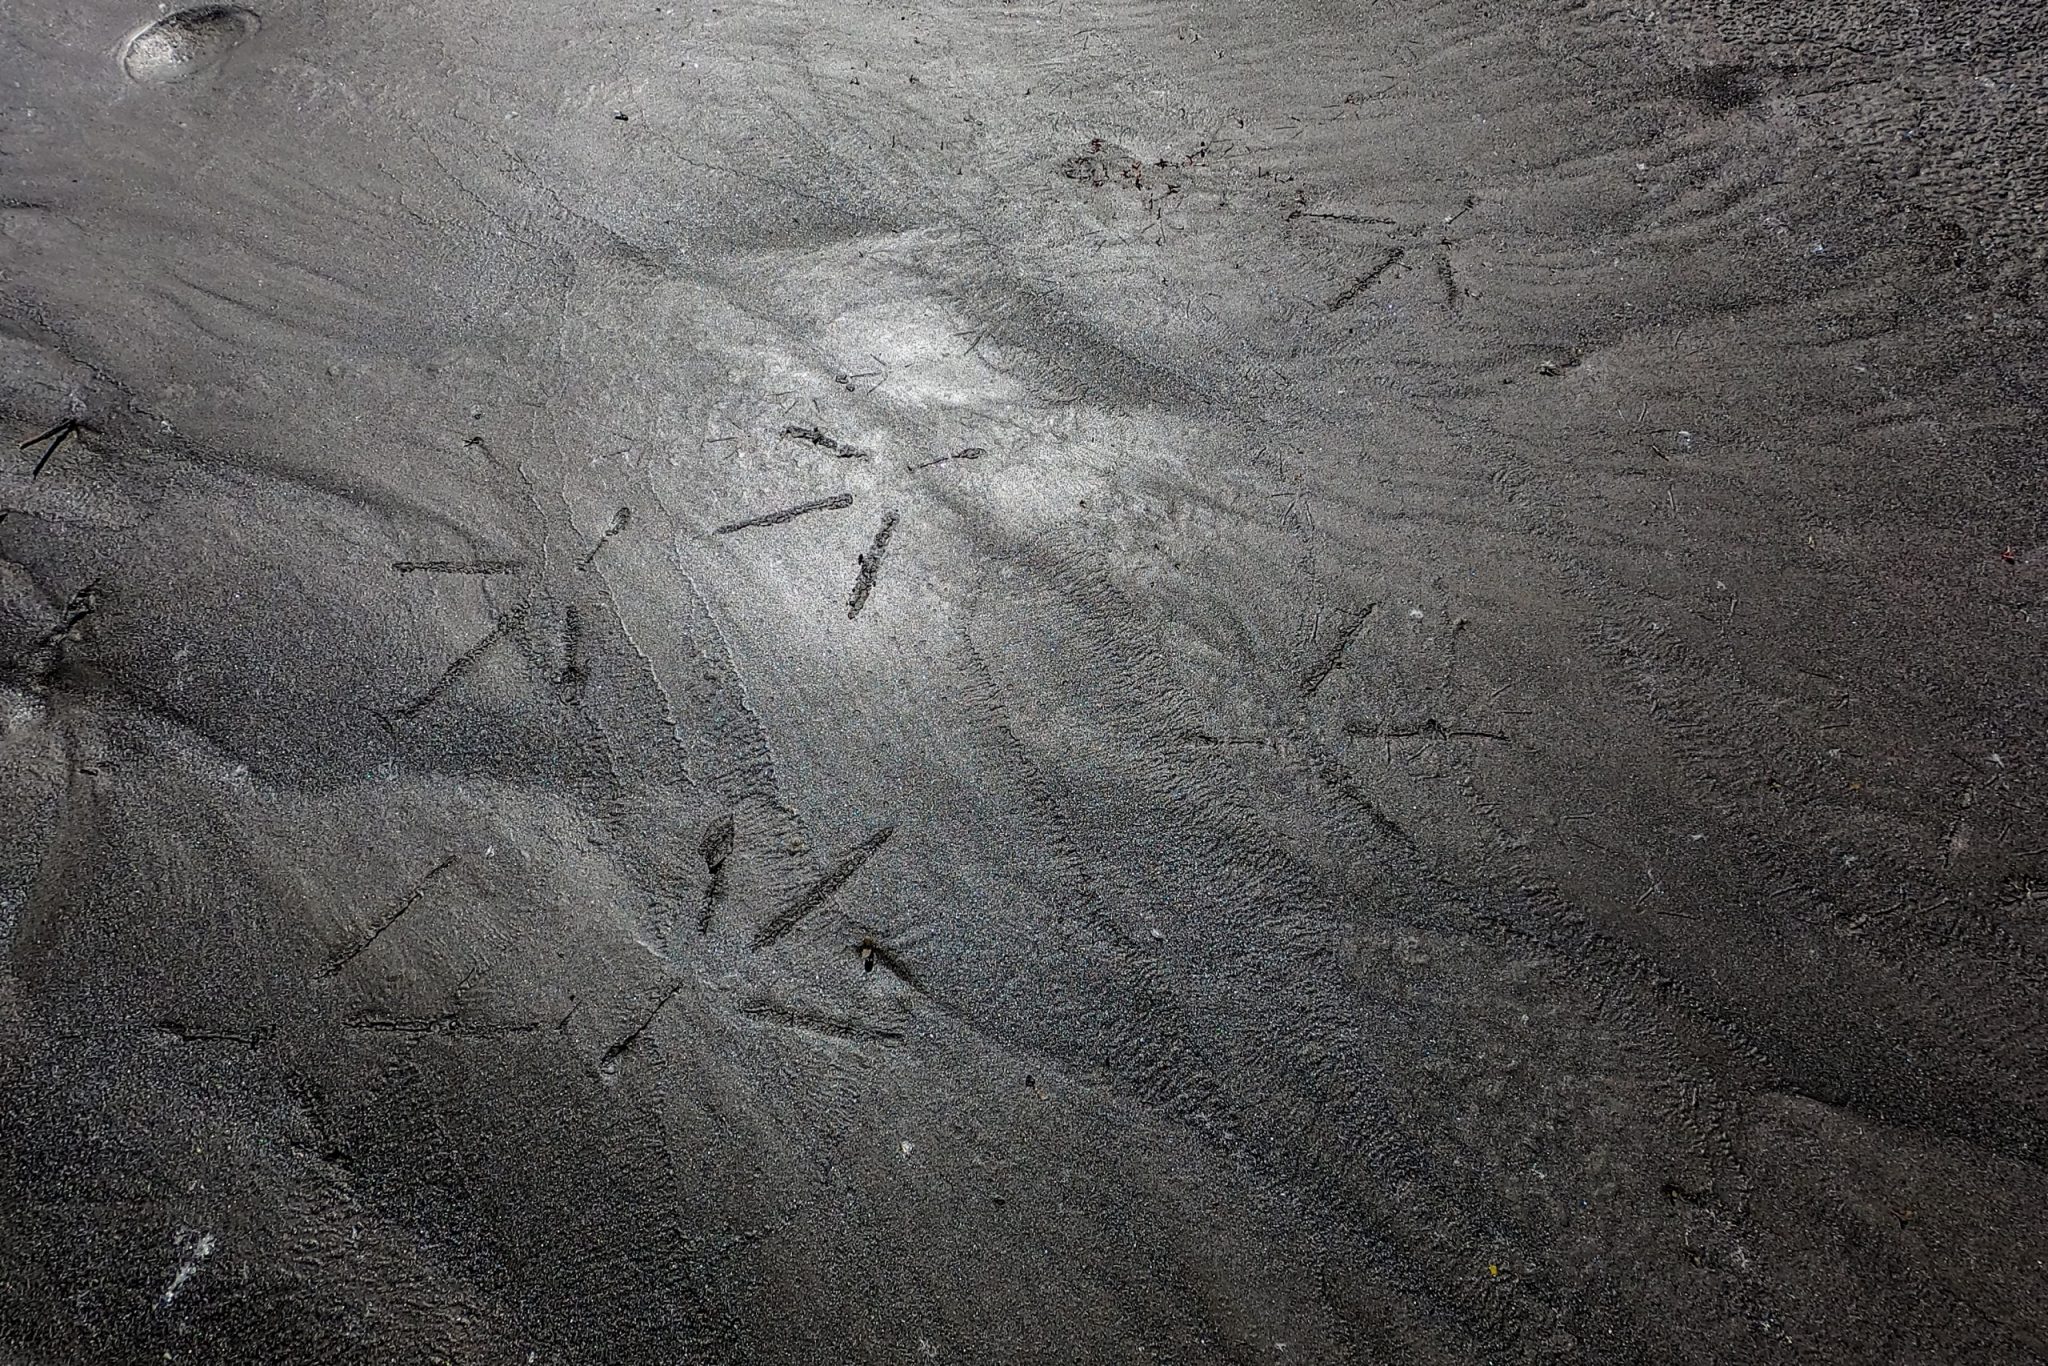 Traces de pattes d'oiseaux sur le bord de l'Isère